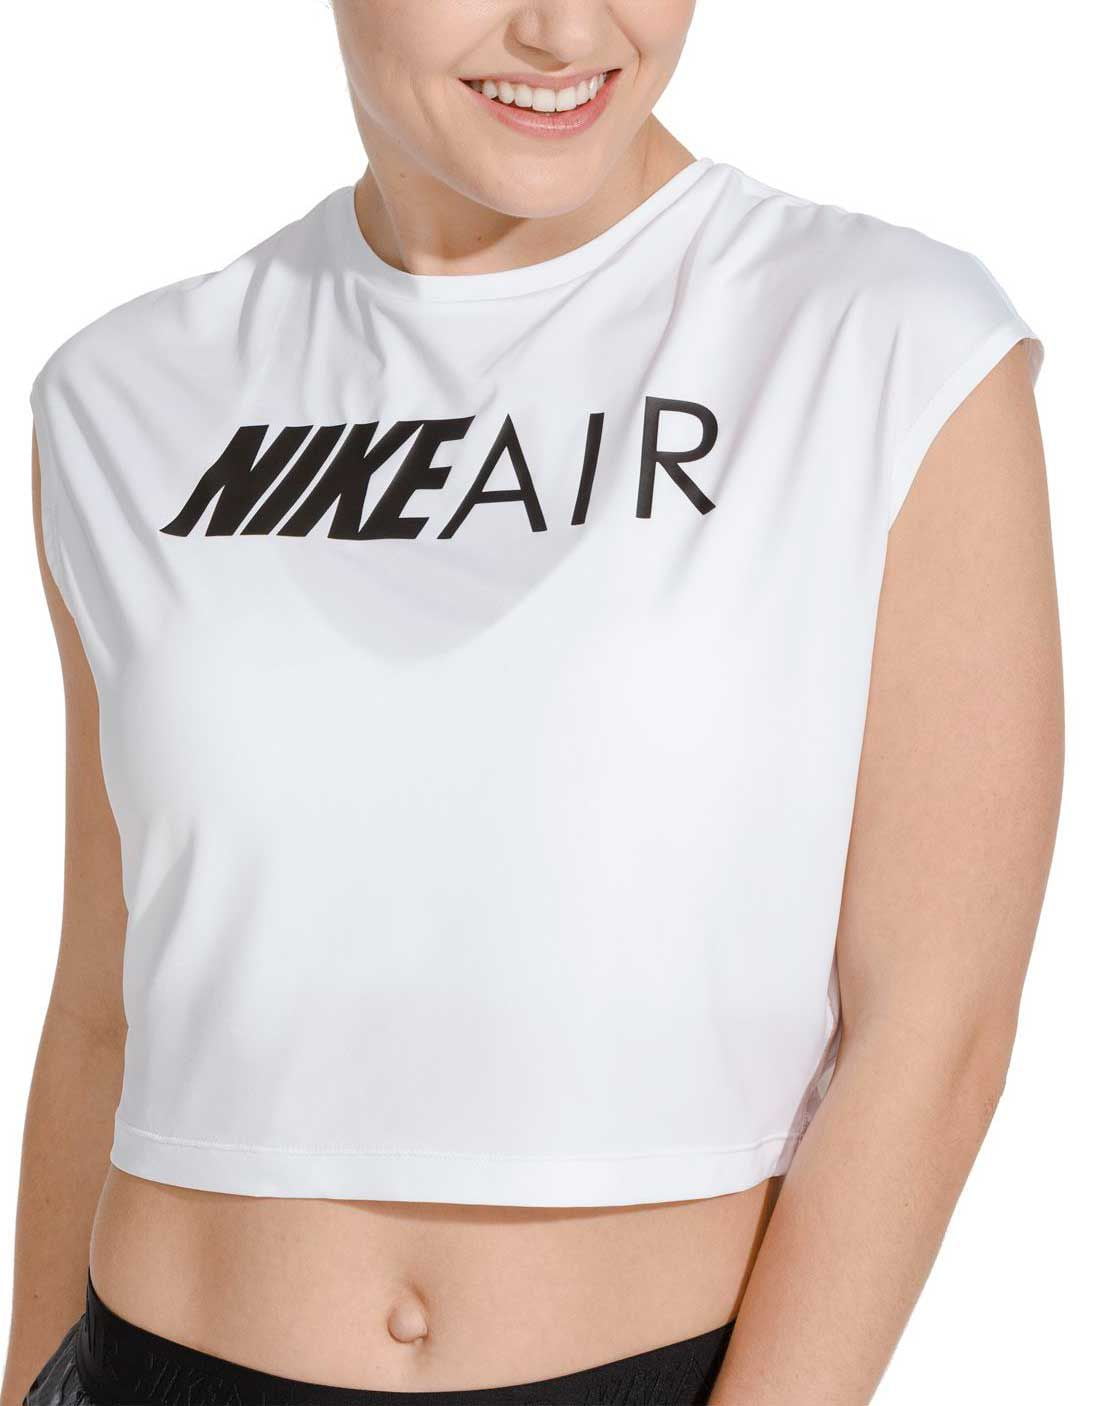 nike women's air short sleeve running crop top